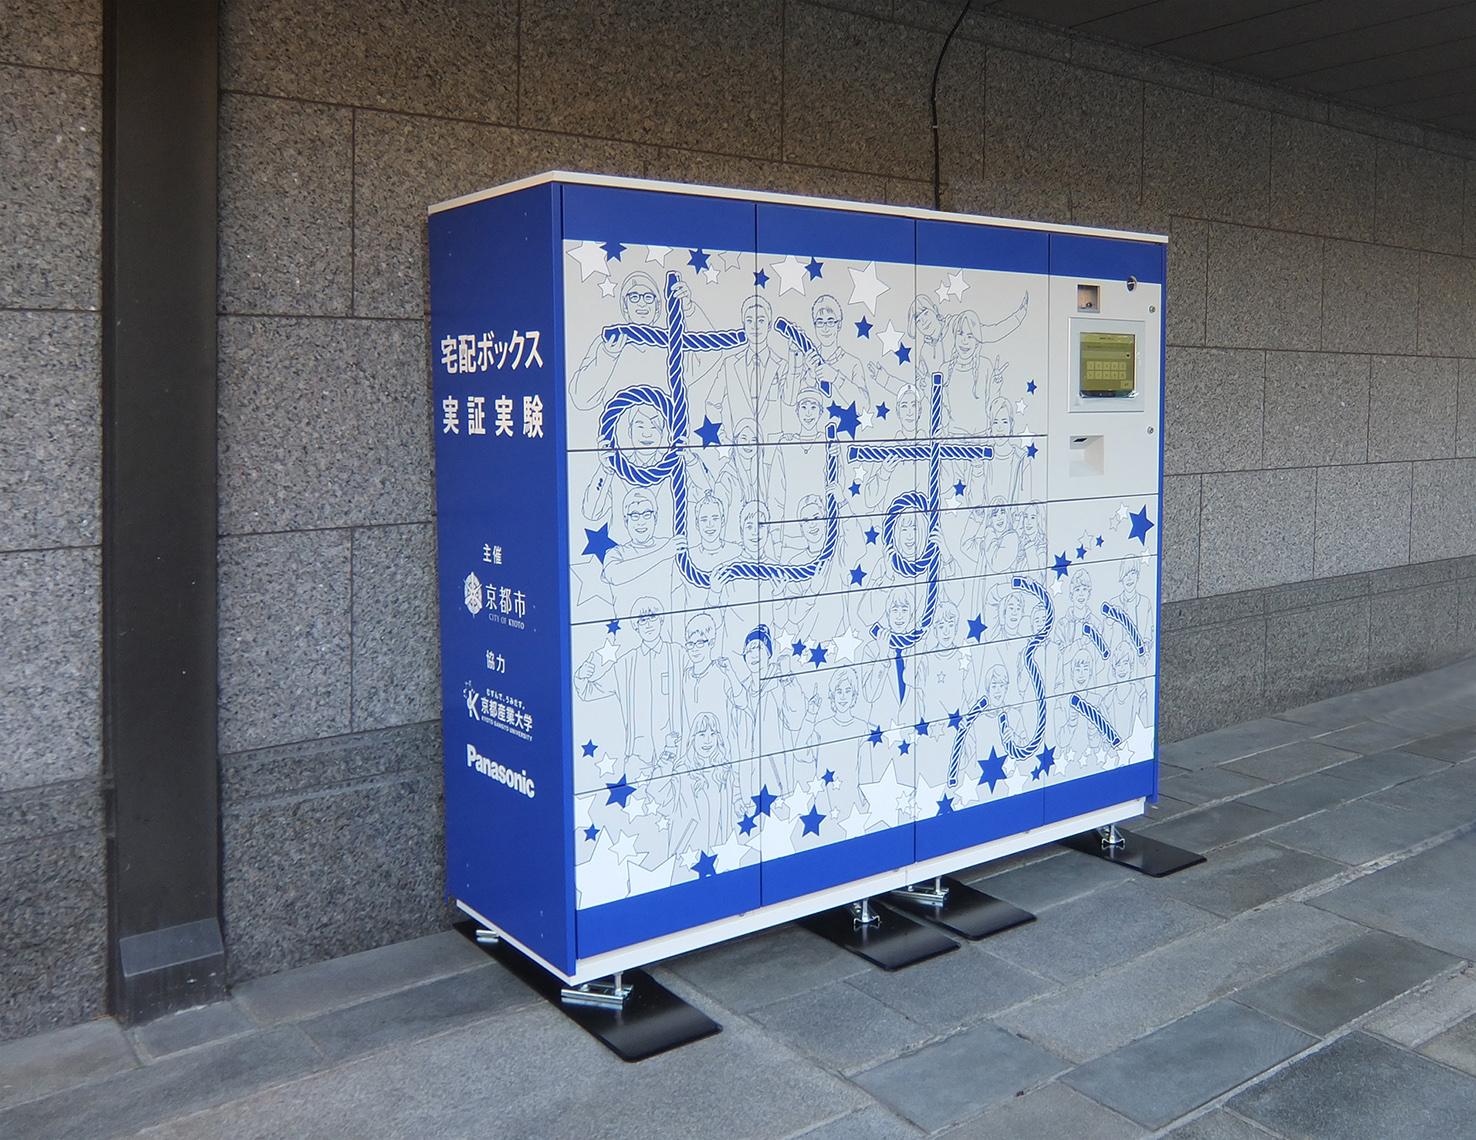 京都産業大学内に設置された公共用宅配ボックス